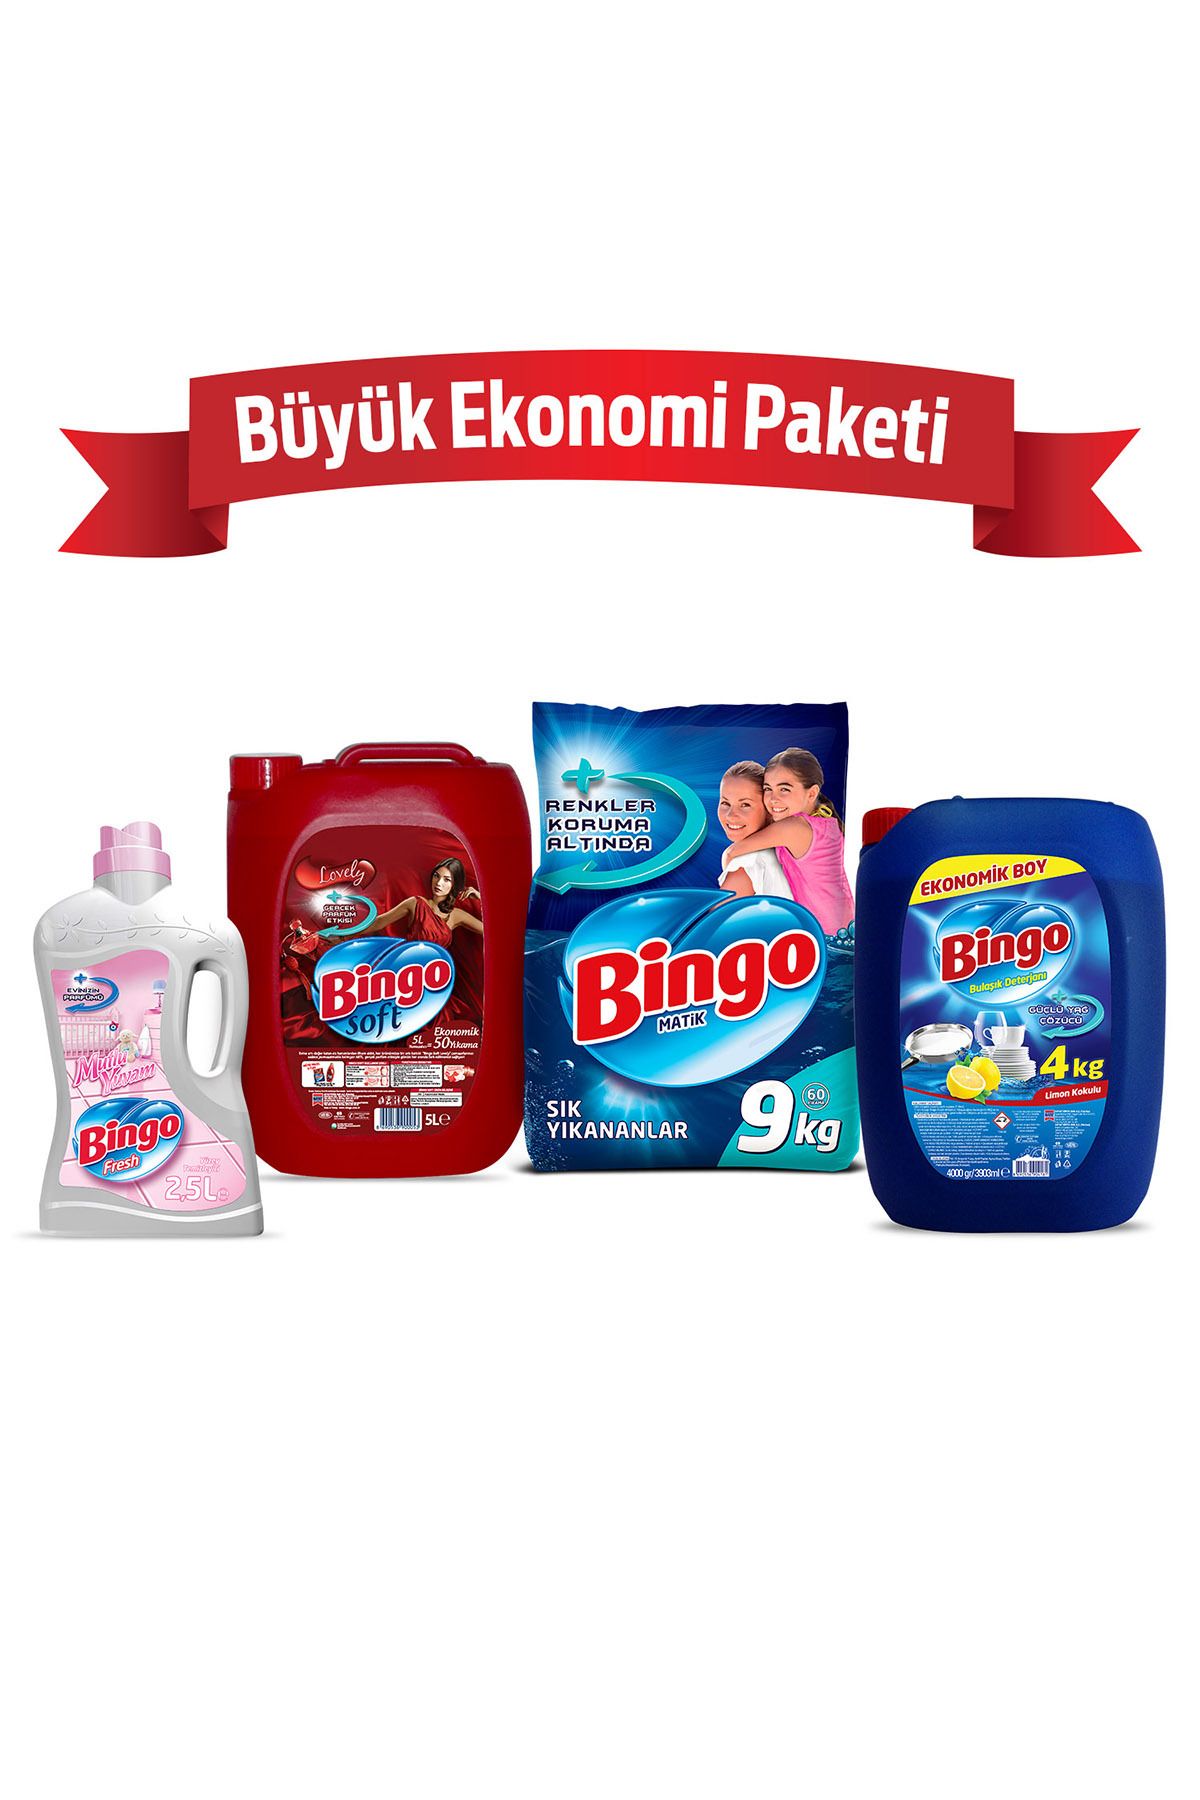 Bingo "büyük Ekonomi Paketi ; 9 Kg Toz Çamaşır Deterjanı Sık Yıkananlar Çamaşır Yumuşatıcısı 5 L Lovely